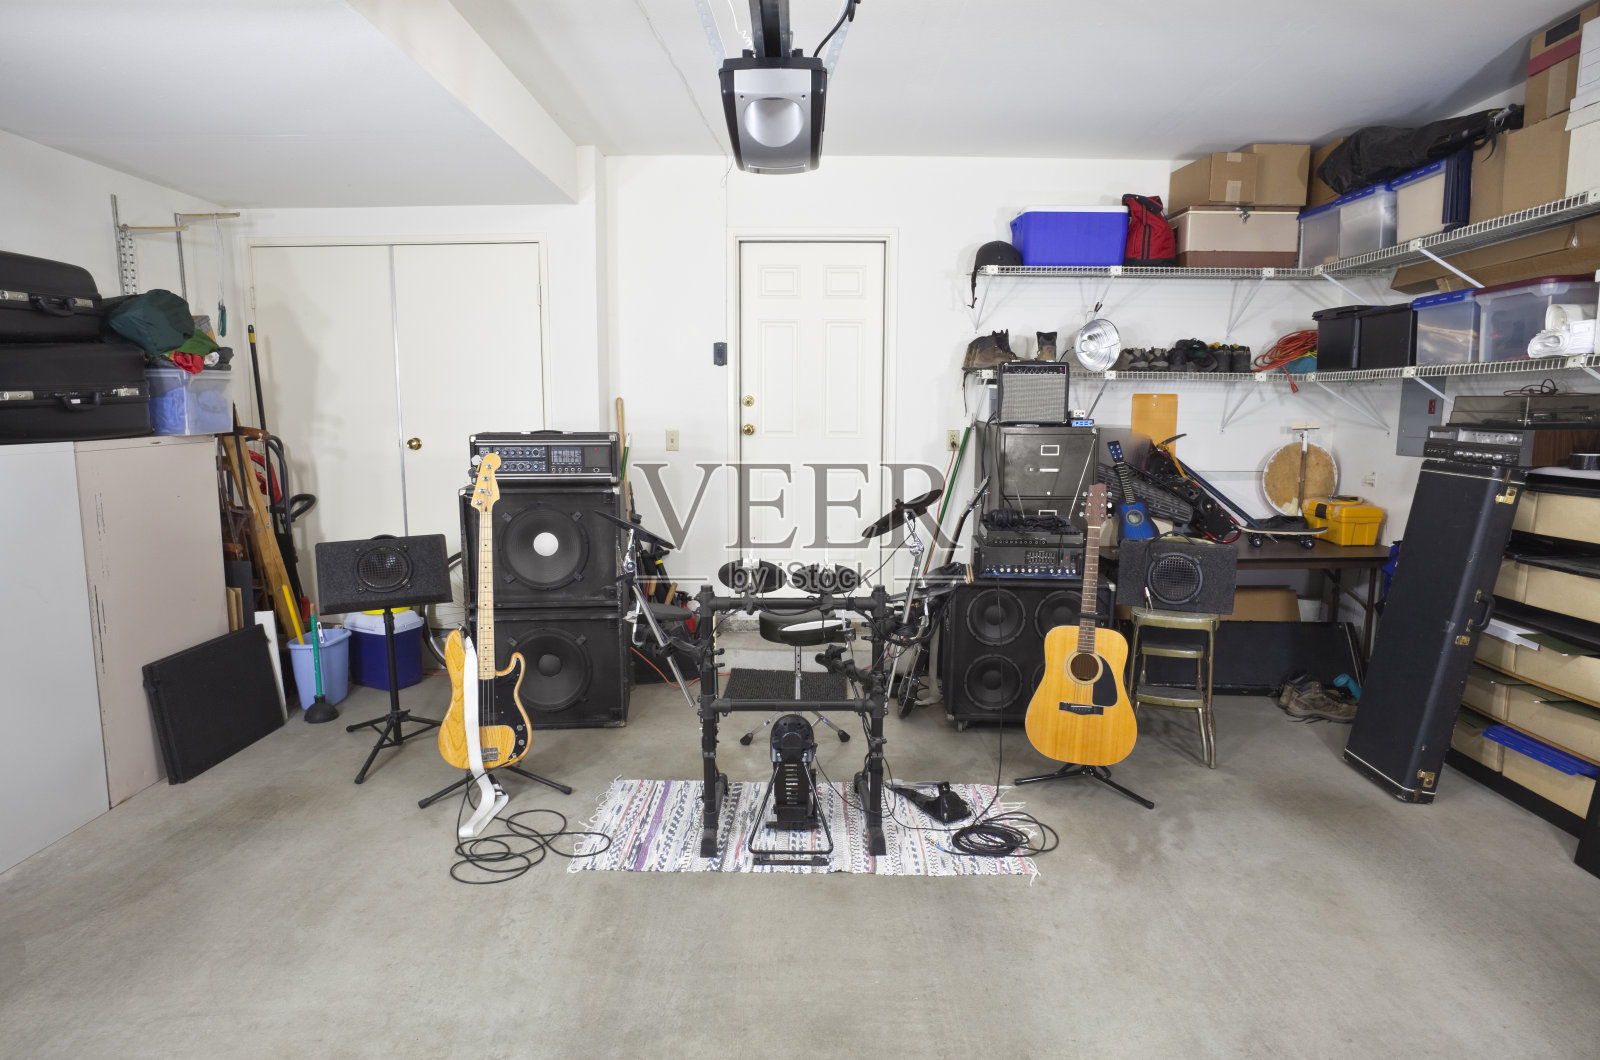 摇滚乐队的音乐设备在杂乱的车库照片摄影图片